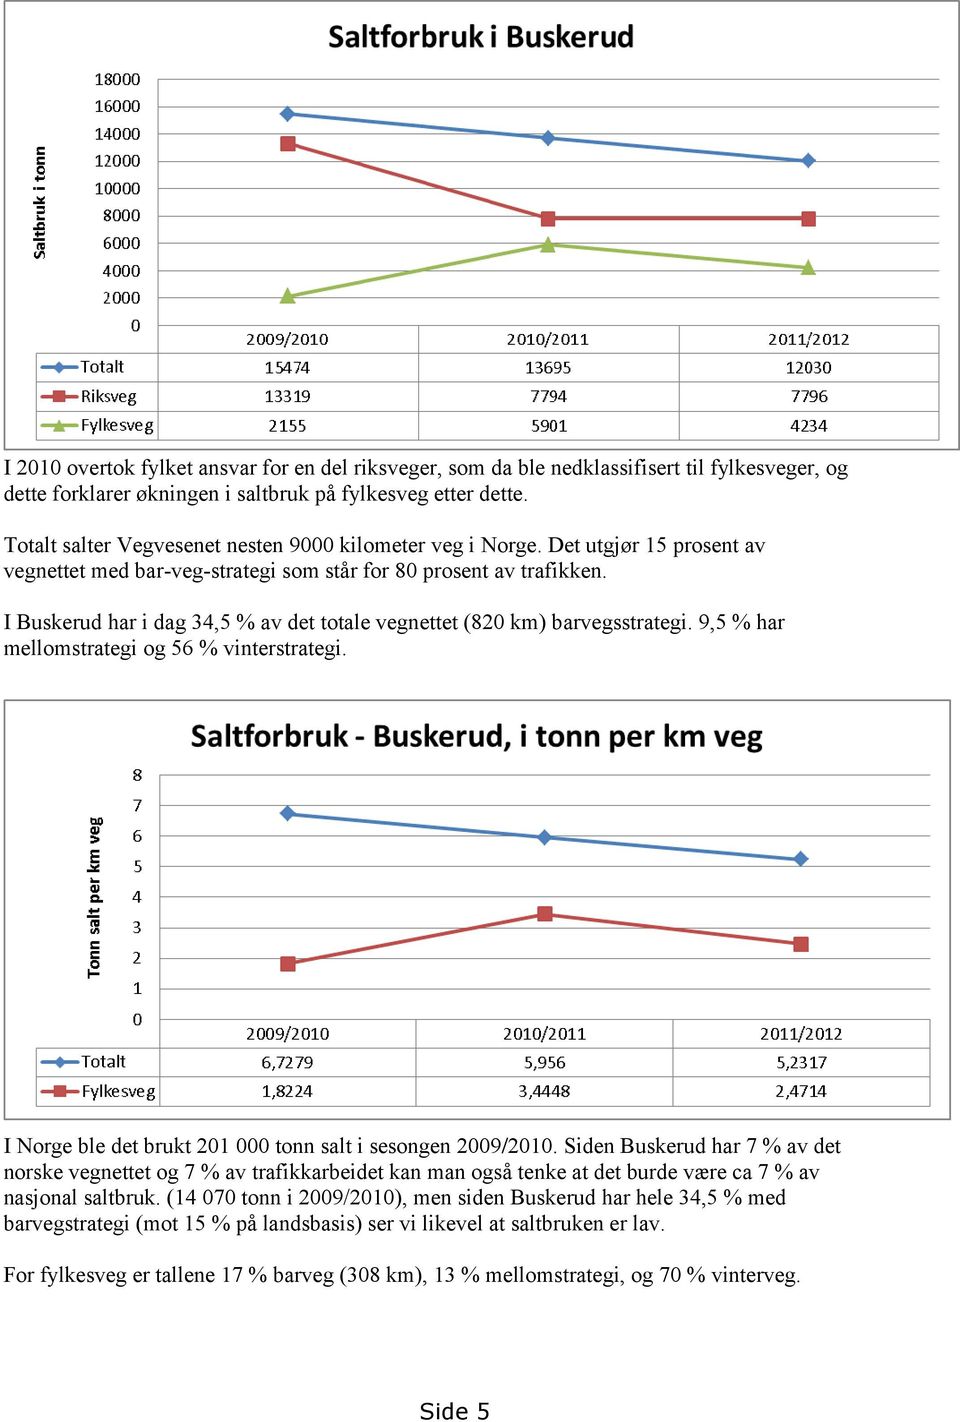 I Buskerud har i dag 34,5 % av det totale vegnettet (820 km) barvegsstrategi. 9,5 % har mellomstrategi og 56 % vinterstrategi. I Norge ble det brukt 201 000 tonn salt i sesongen 2009/2010.